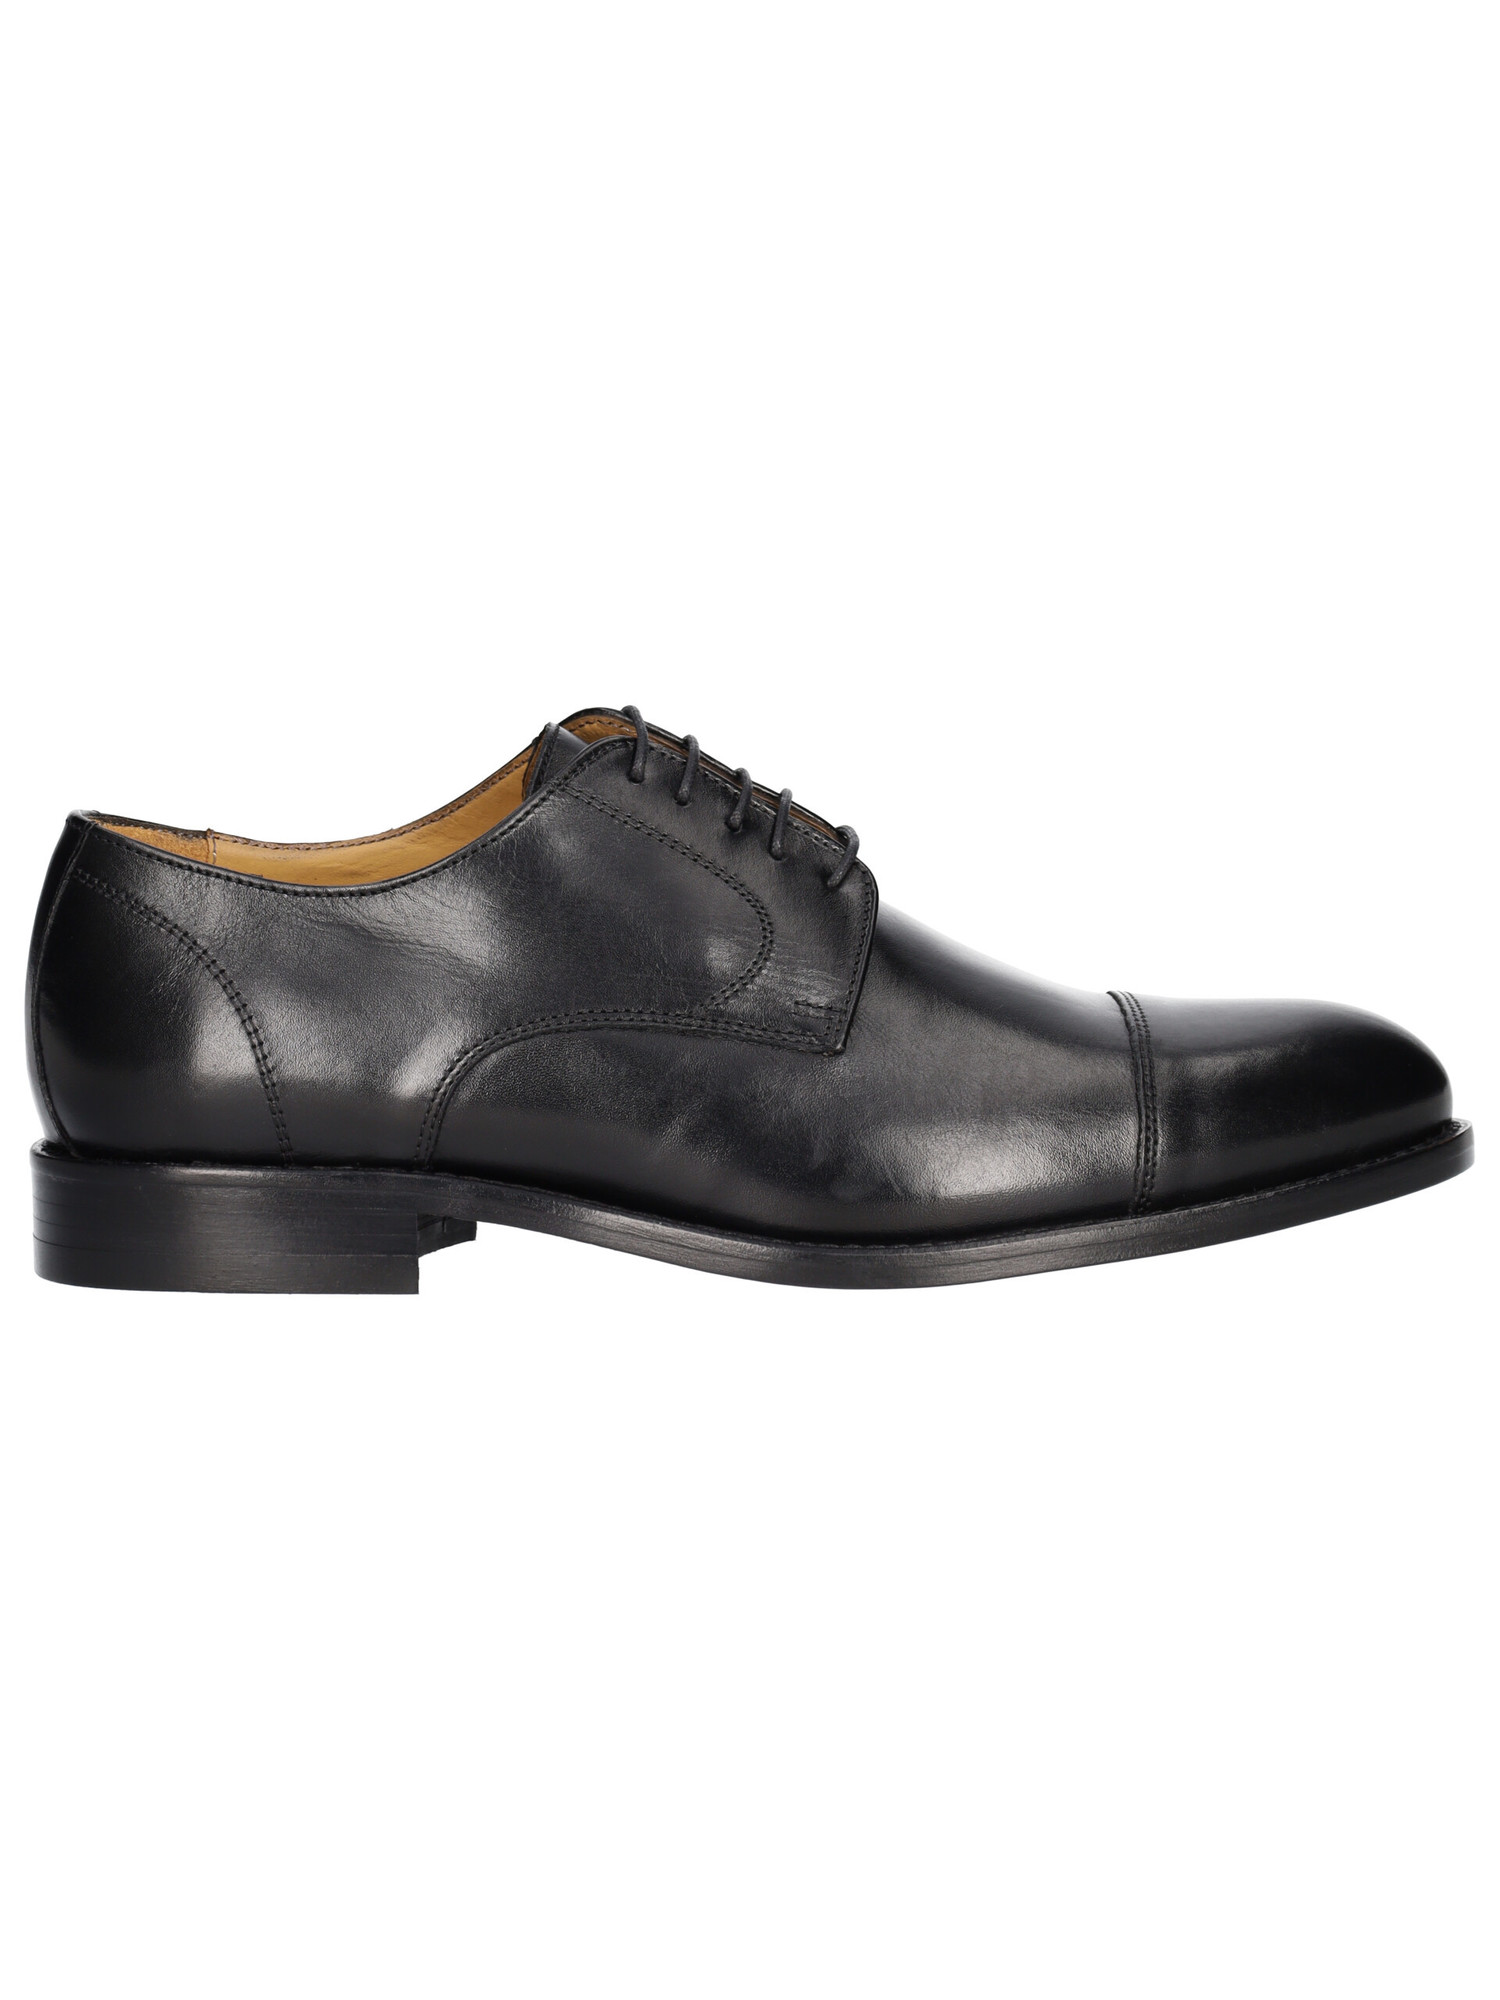 scarpa-elegante-mercante-fiorentini-da-uomo-nera-25f576